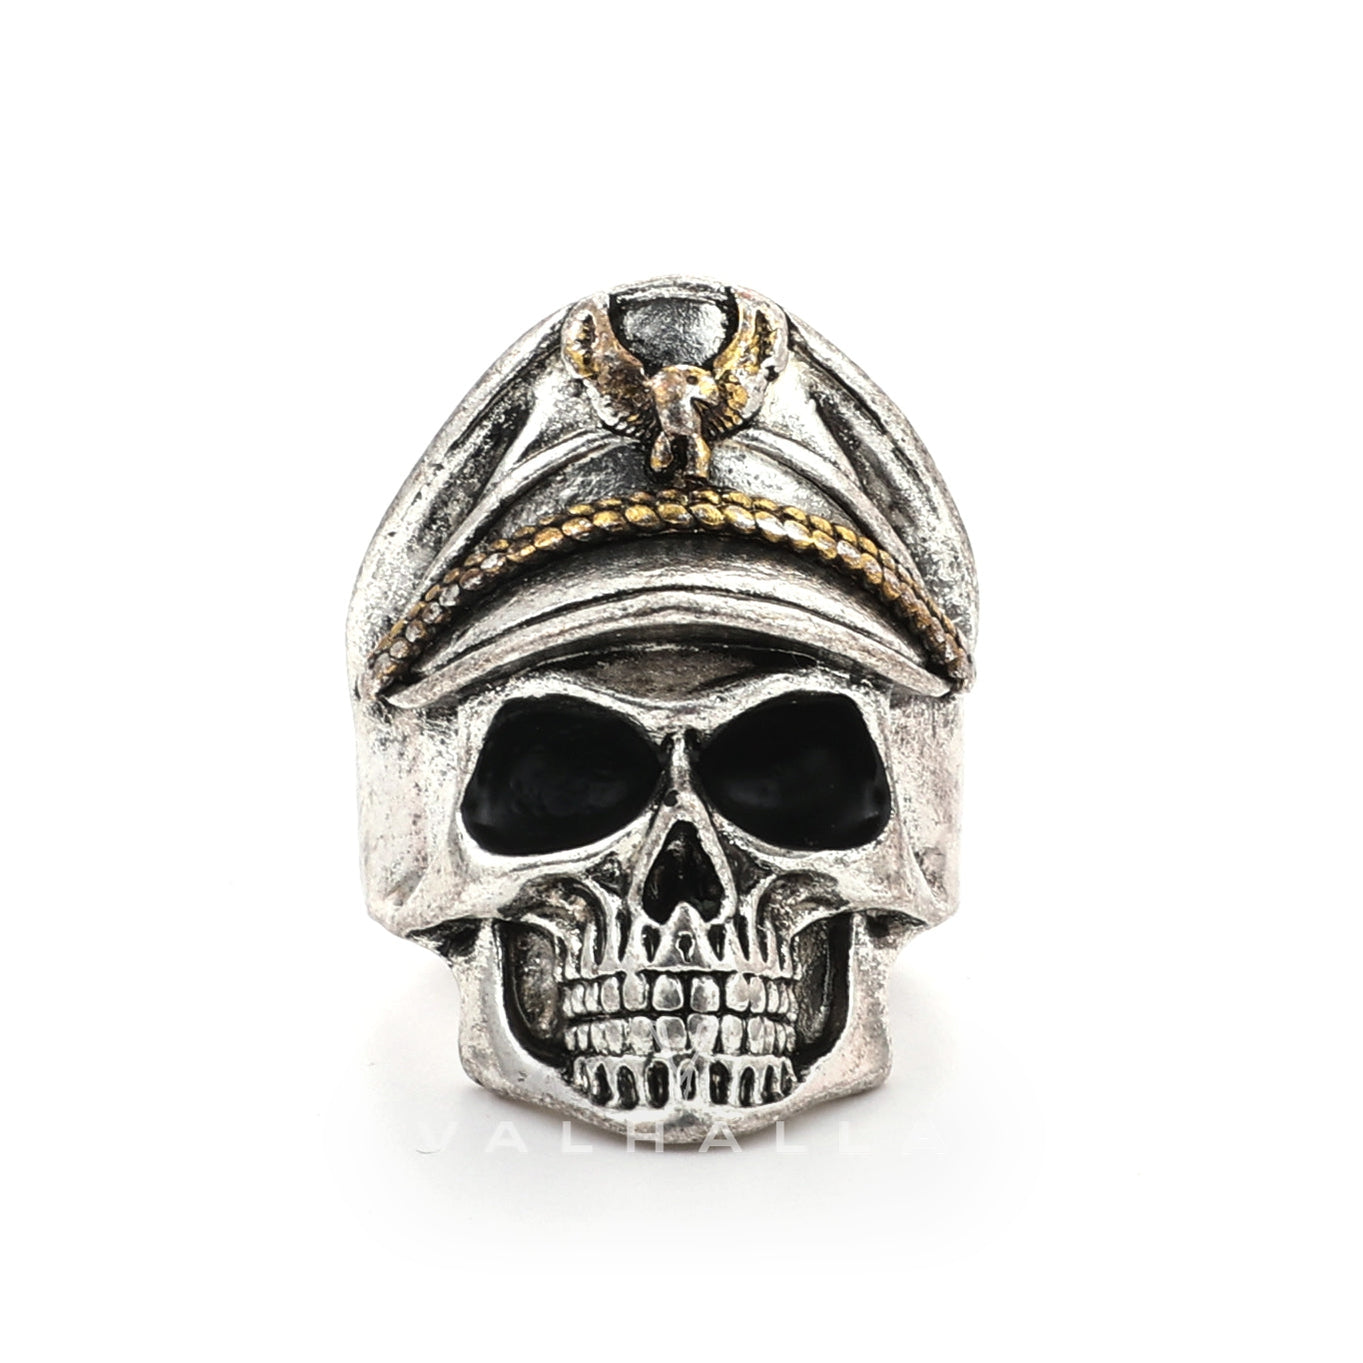 Naval Instructor Skull Ring